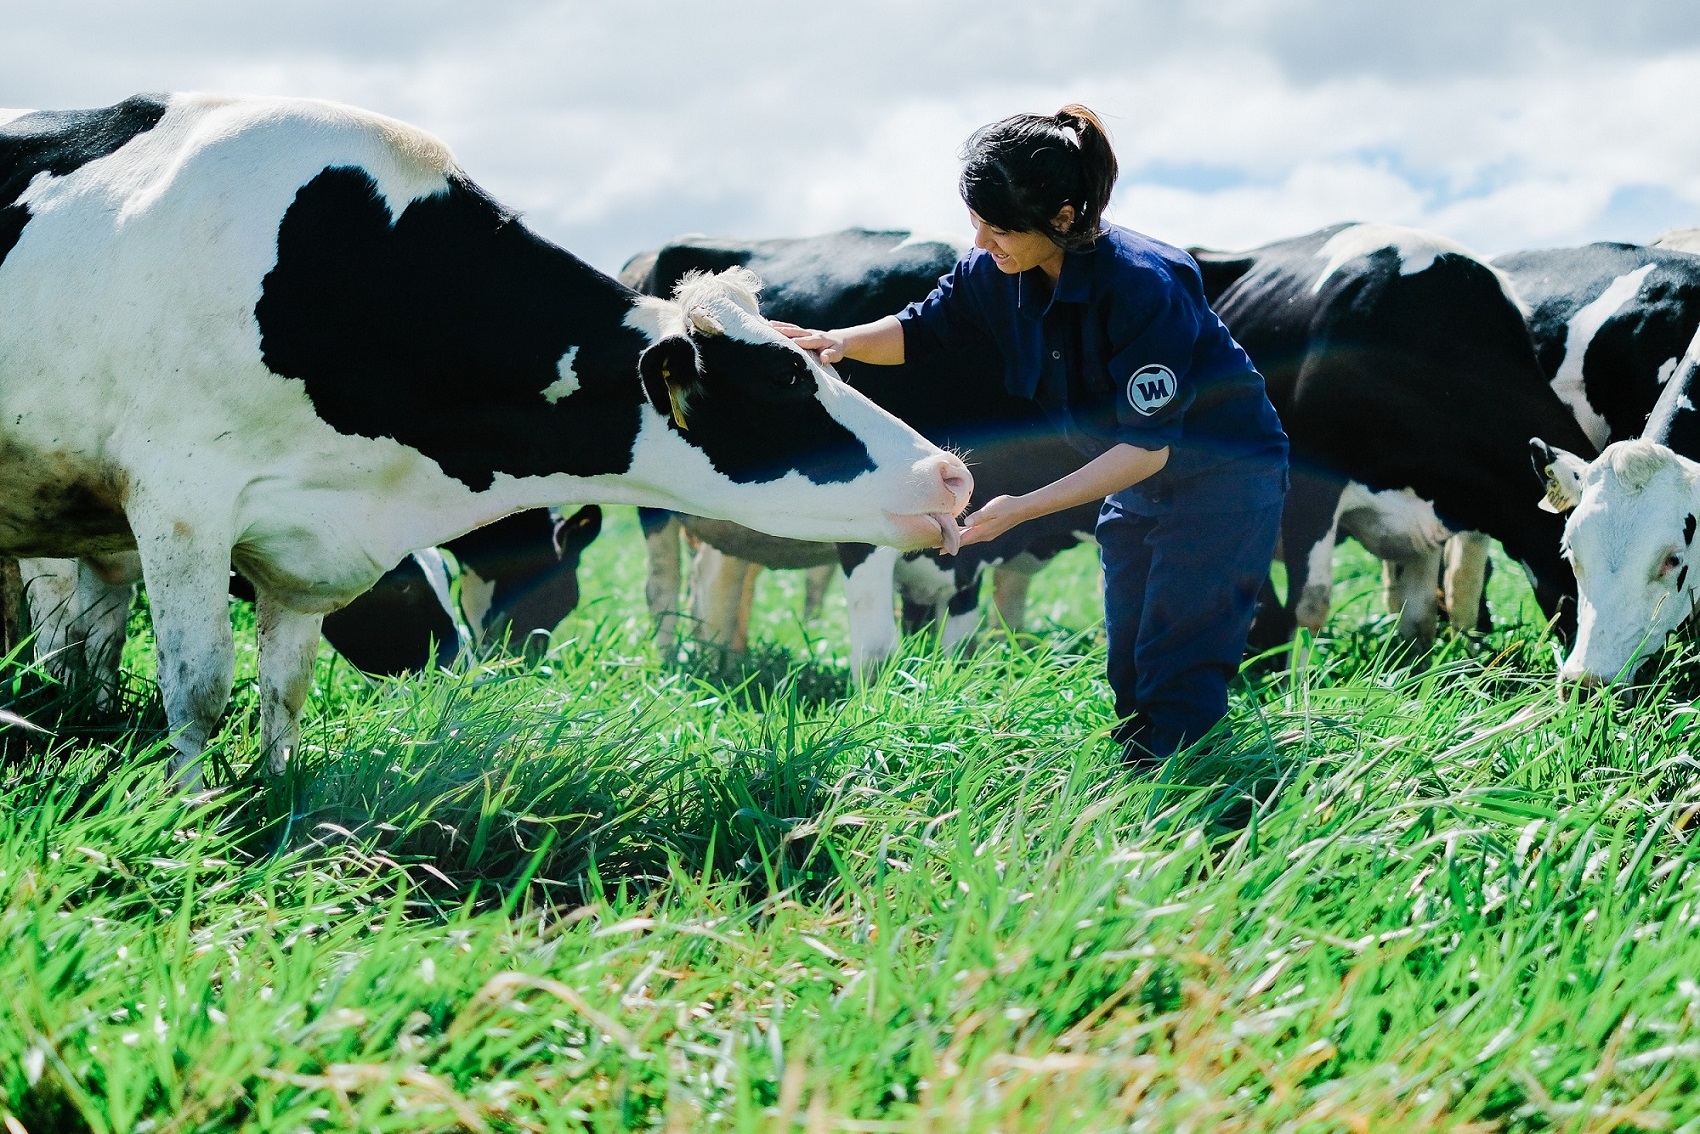 Việc chăm sóc bò sữa theo tiêu chuẩn Organic luôn được Vinamilk tuân thủ nghiêm ngặt